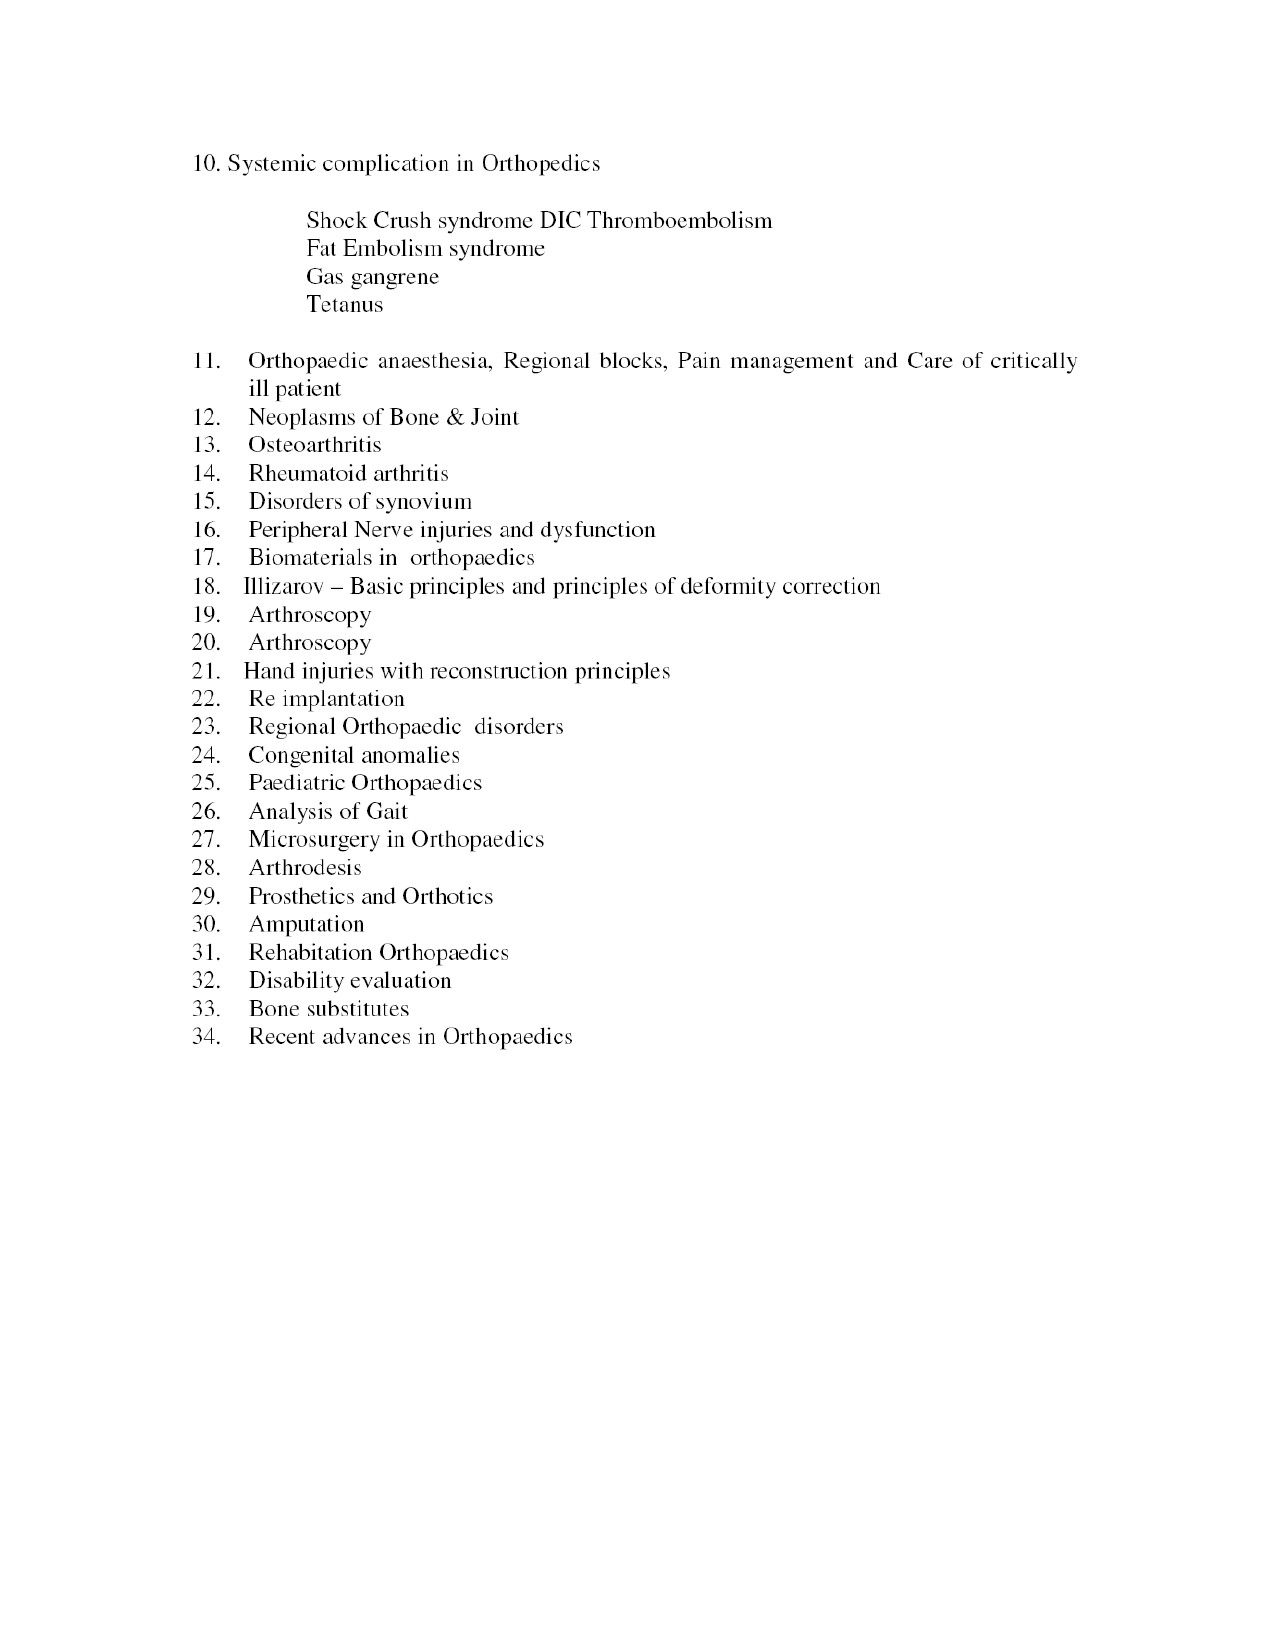 MS Level Syllabus Orthopaedics - Notification Image 2